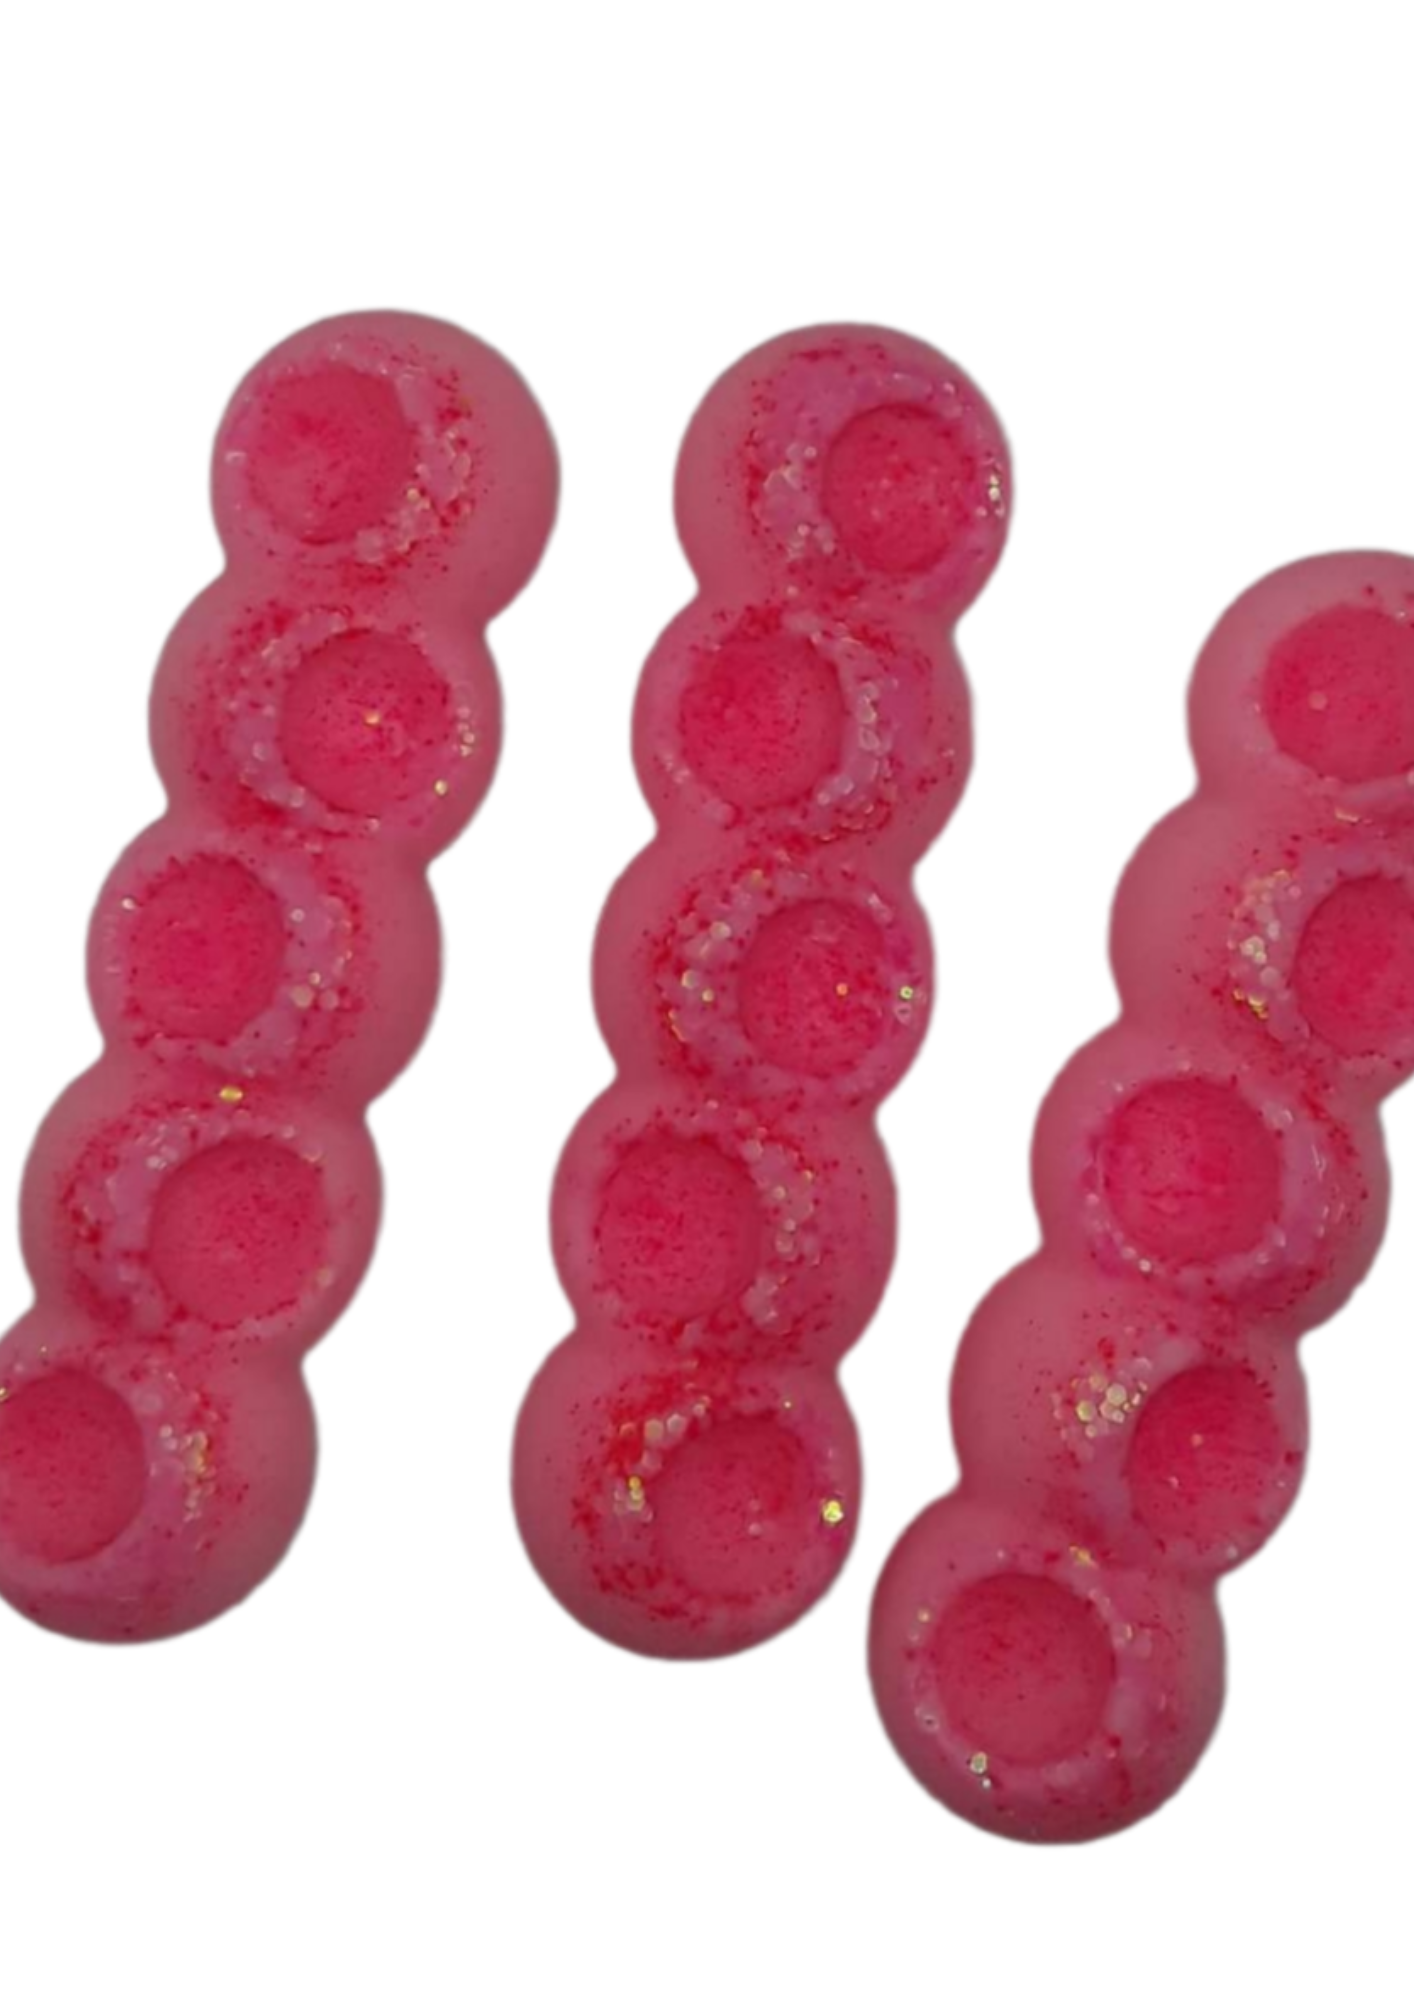 Pink fizz bubble bar wax melts